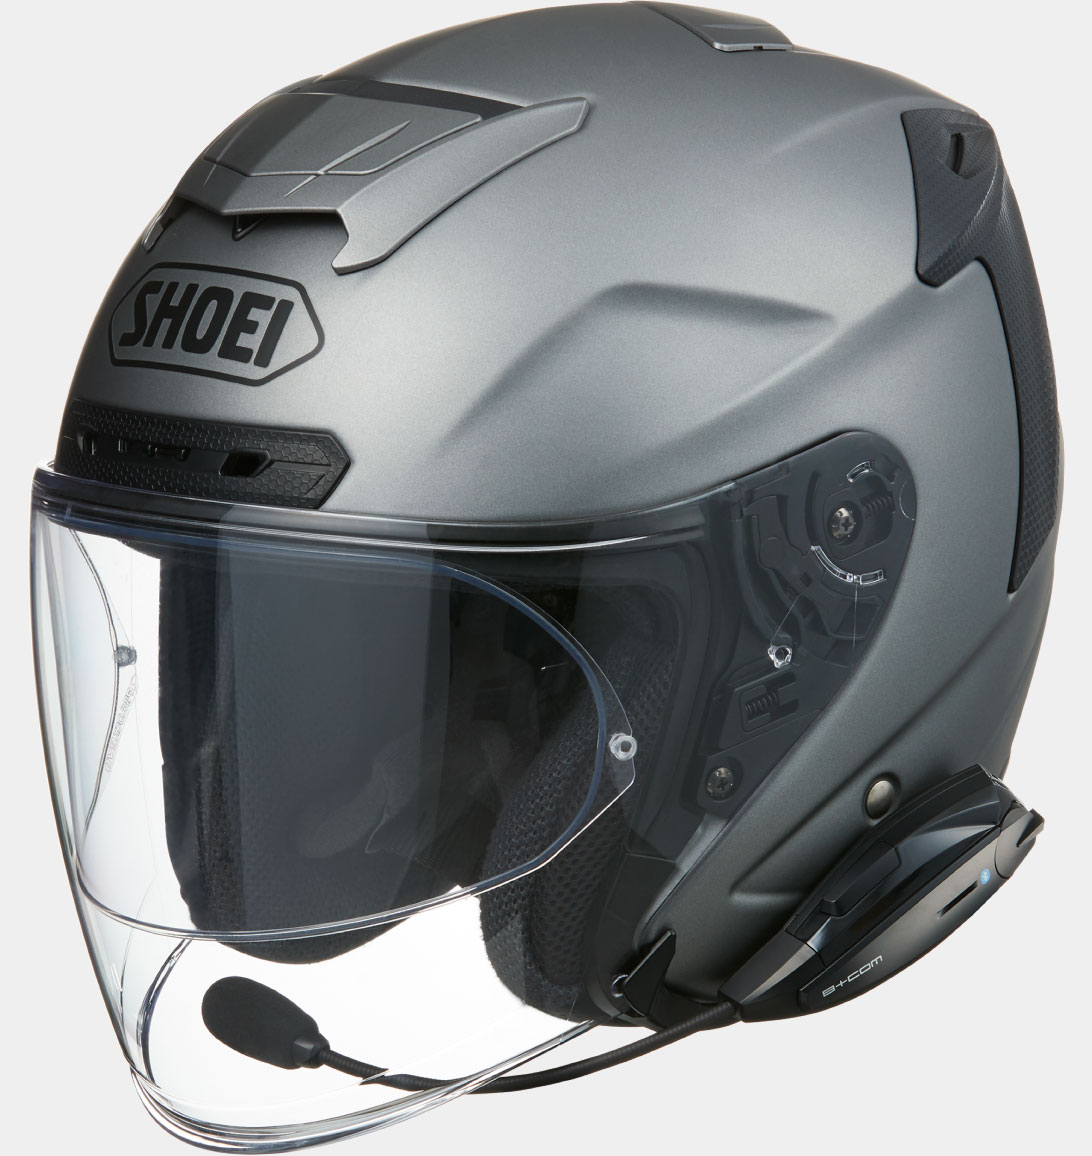 B+COM ONE バイク用インカム ジェットヘルメット取付方法 SHOEI J